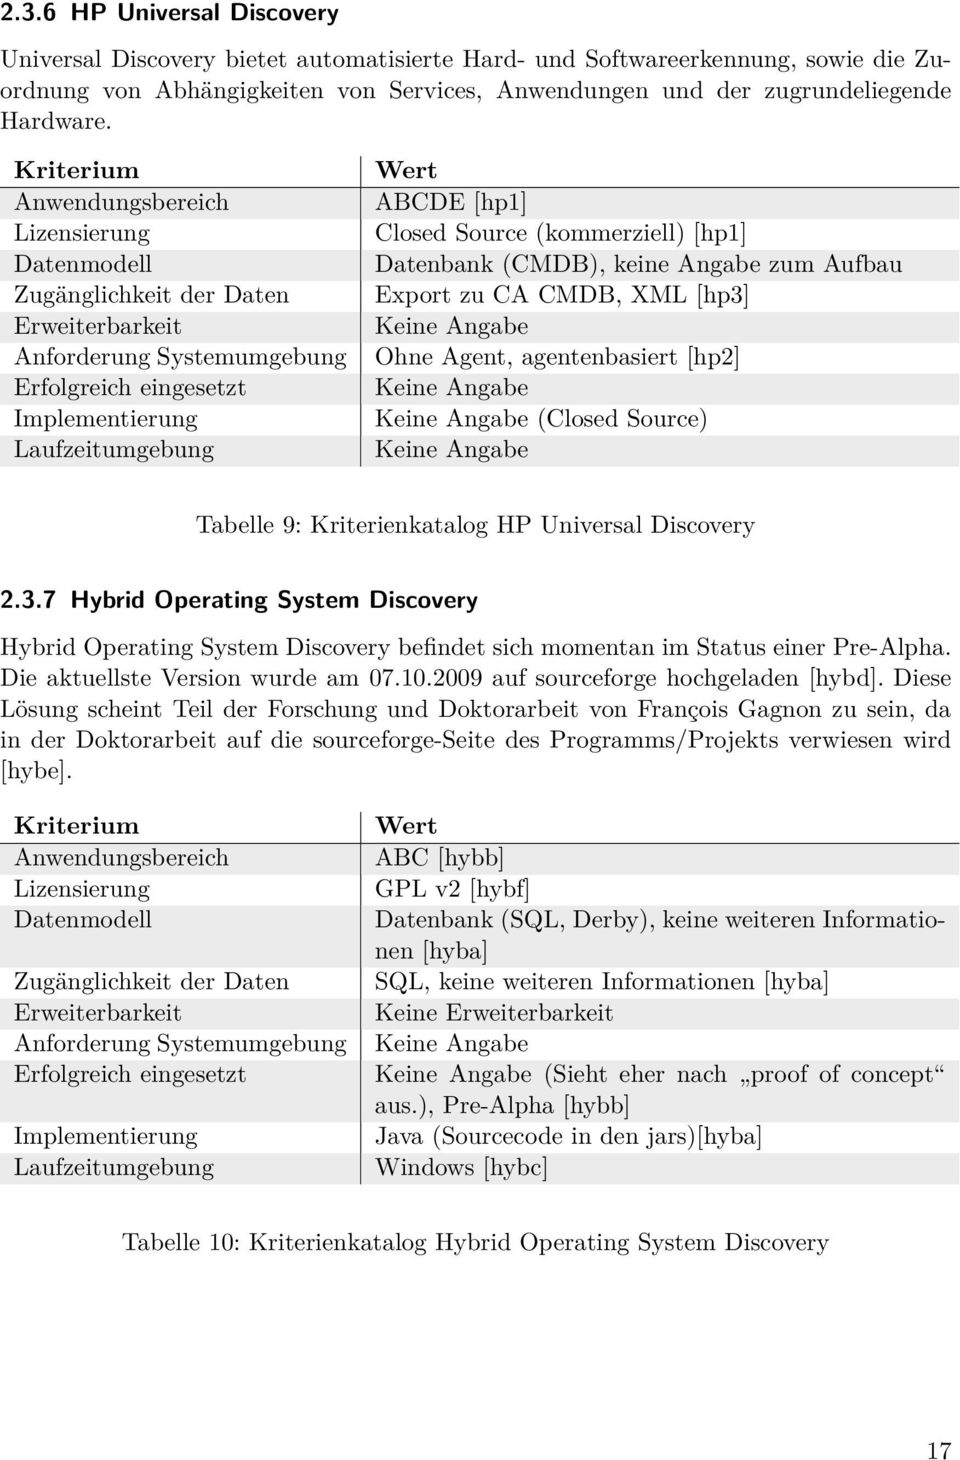 Universal Discovery 2.3.7 Hybrid Operating System Discovery Hybrid Operating System Discovery befindet sich momentan im Status einer Pre-Alpha. Die aktuellste Version wurde am 07.10.